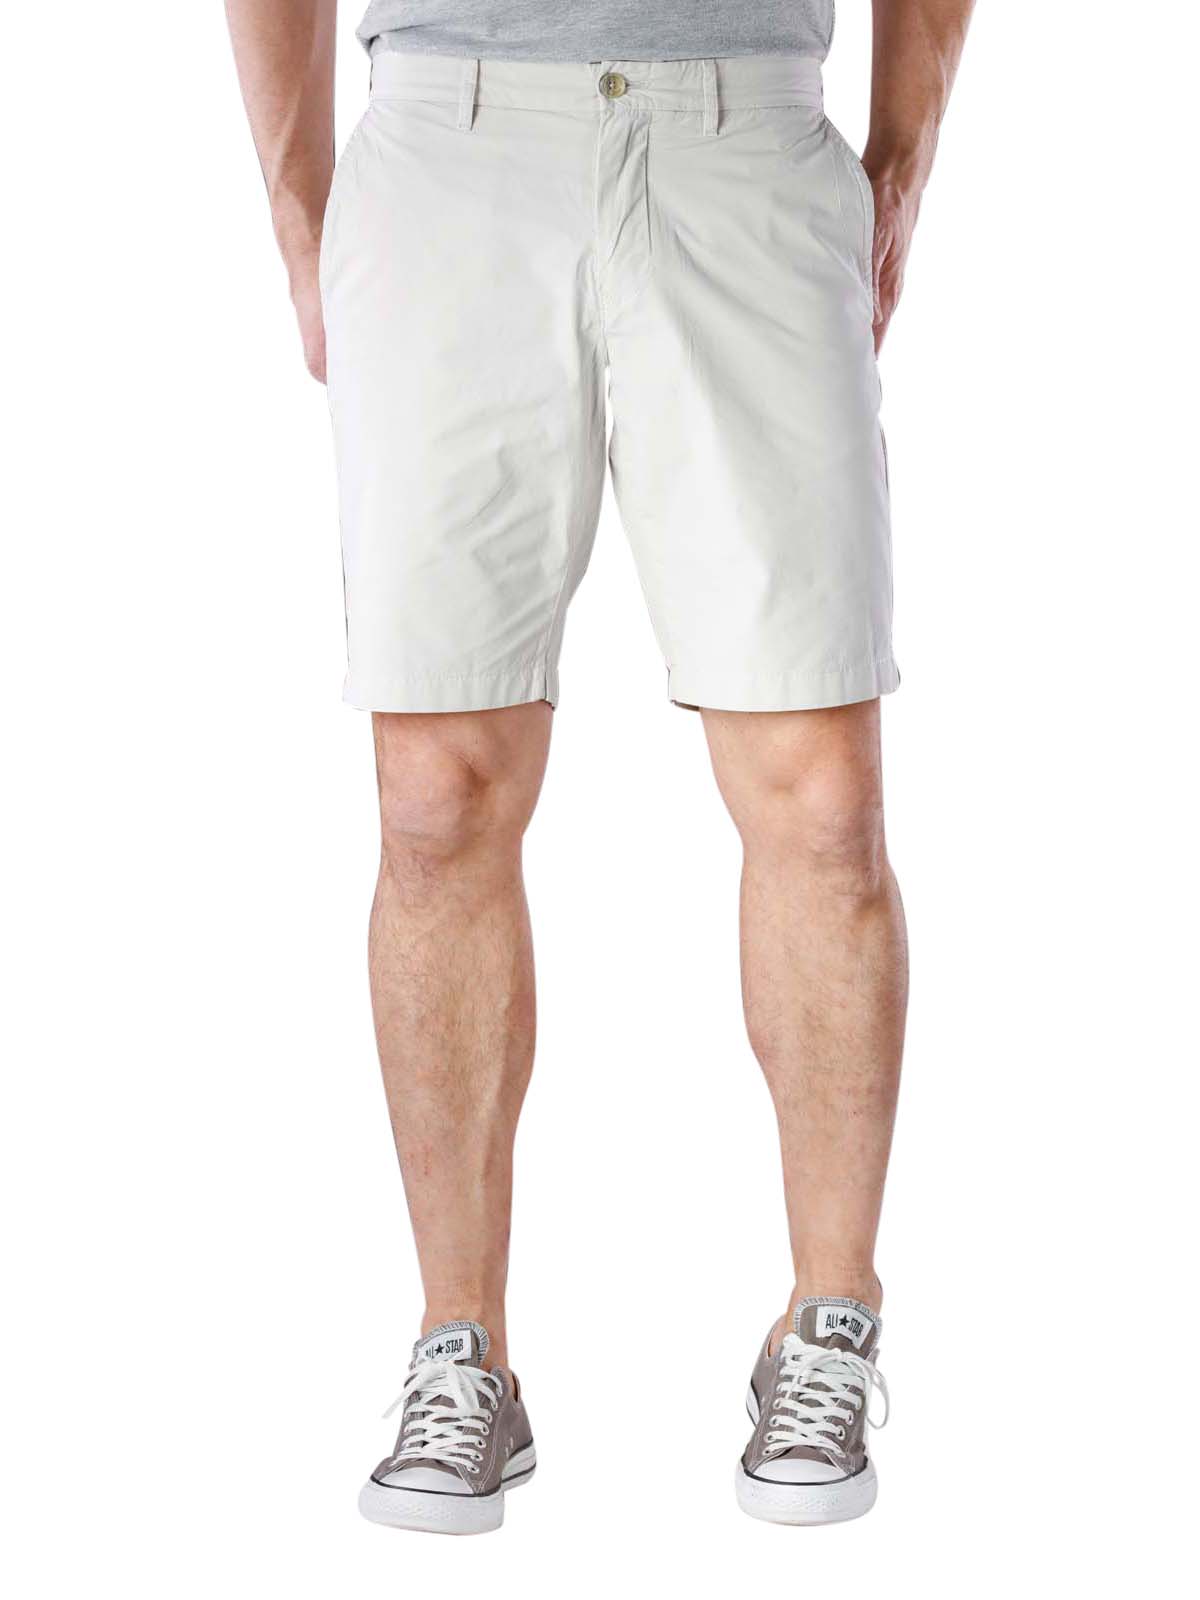 hilfiger brooklyn shorts